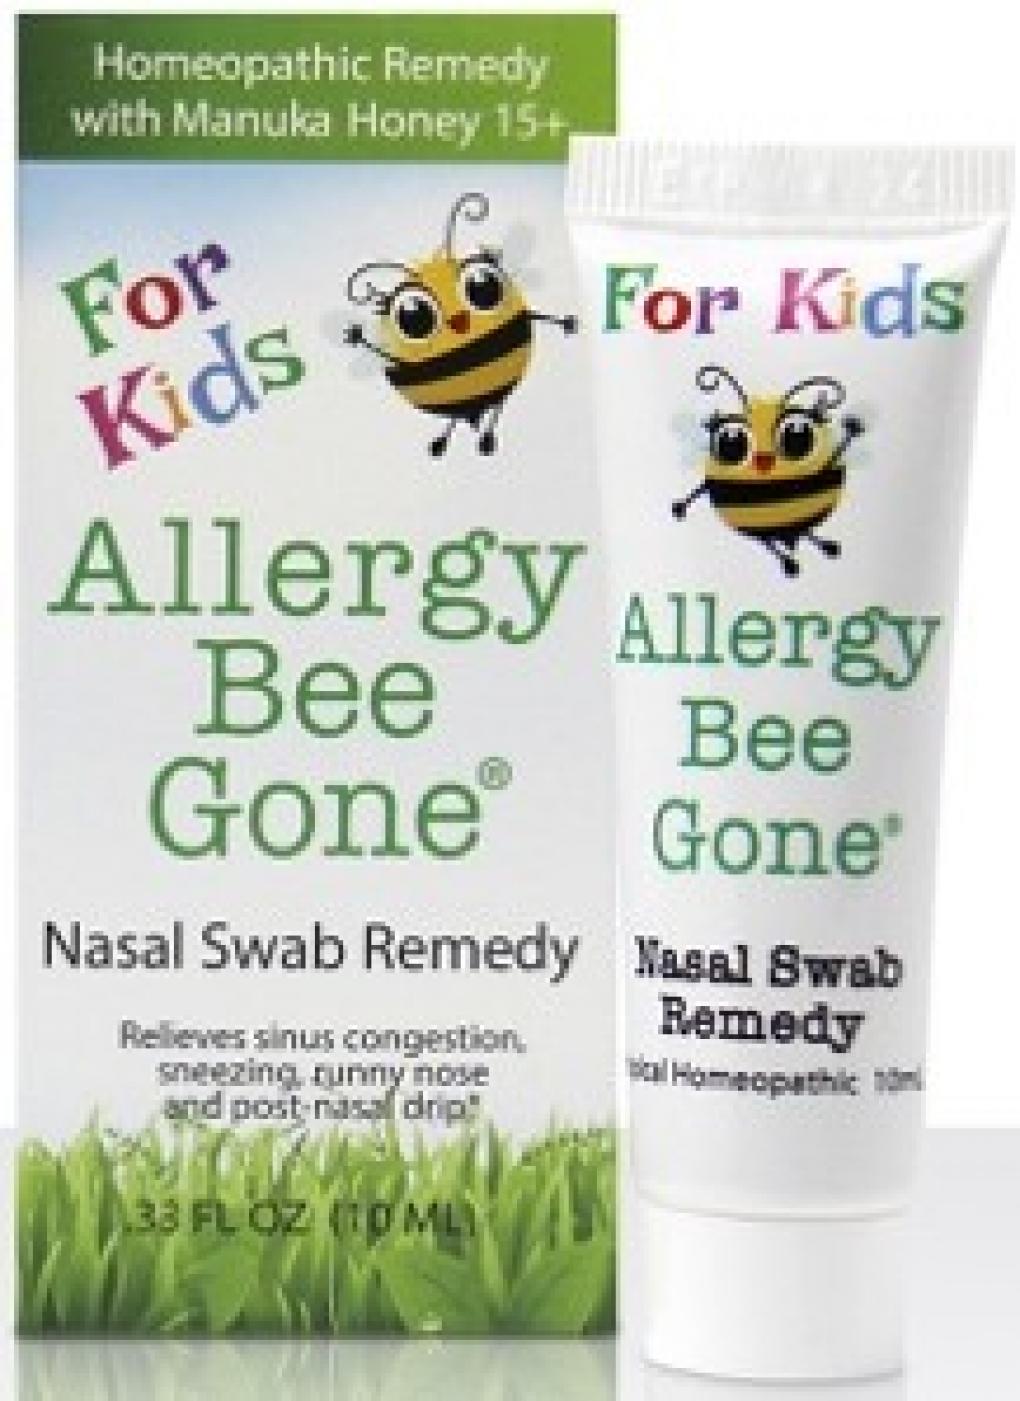 Recalled allergy medicine